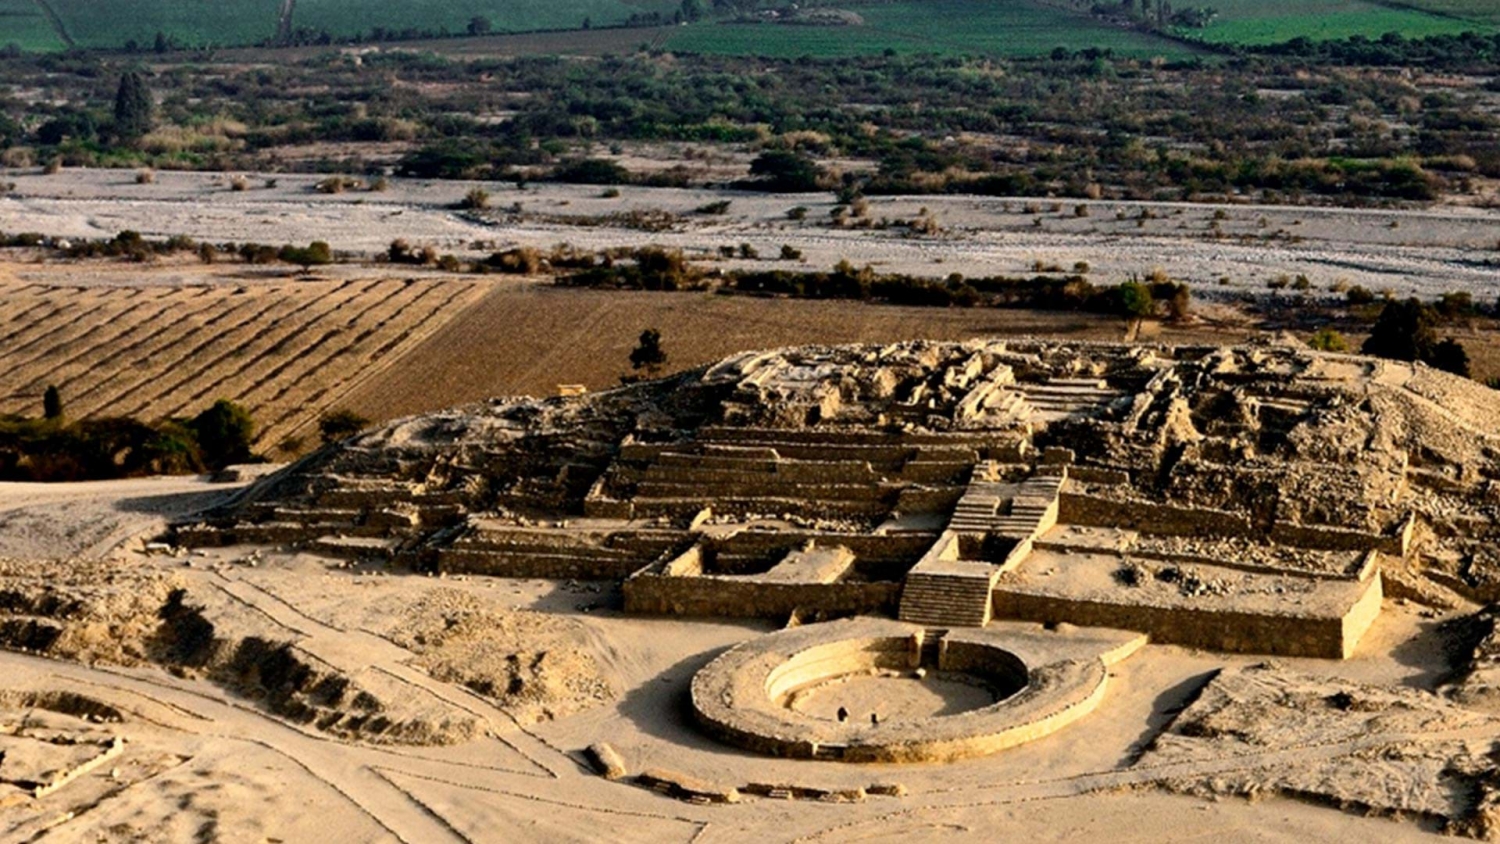 Khám phá và chiêm ngưỡng những tàn tích cổ đại trên thế giới (Phần 2)